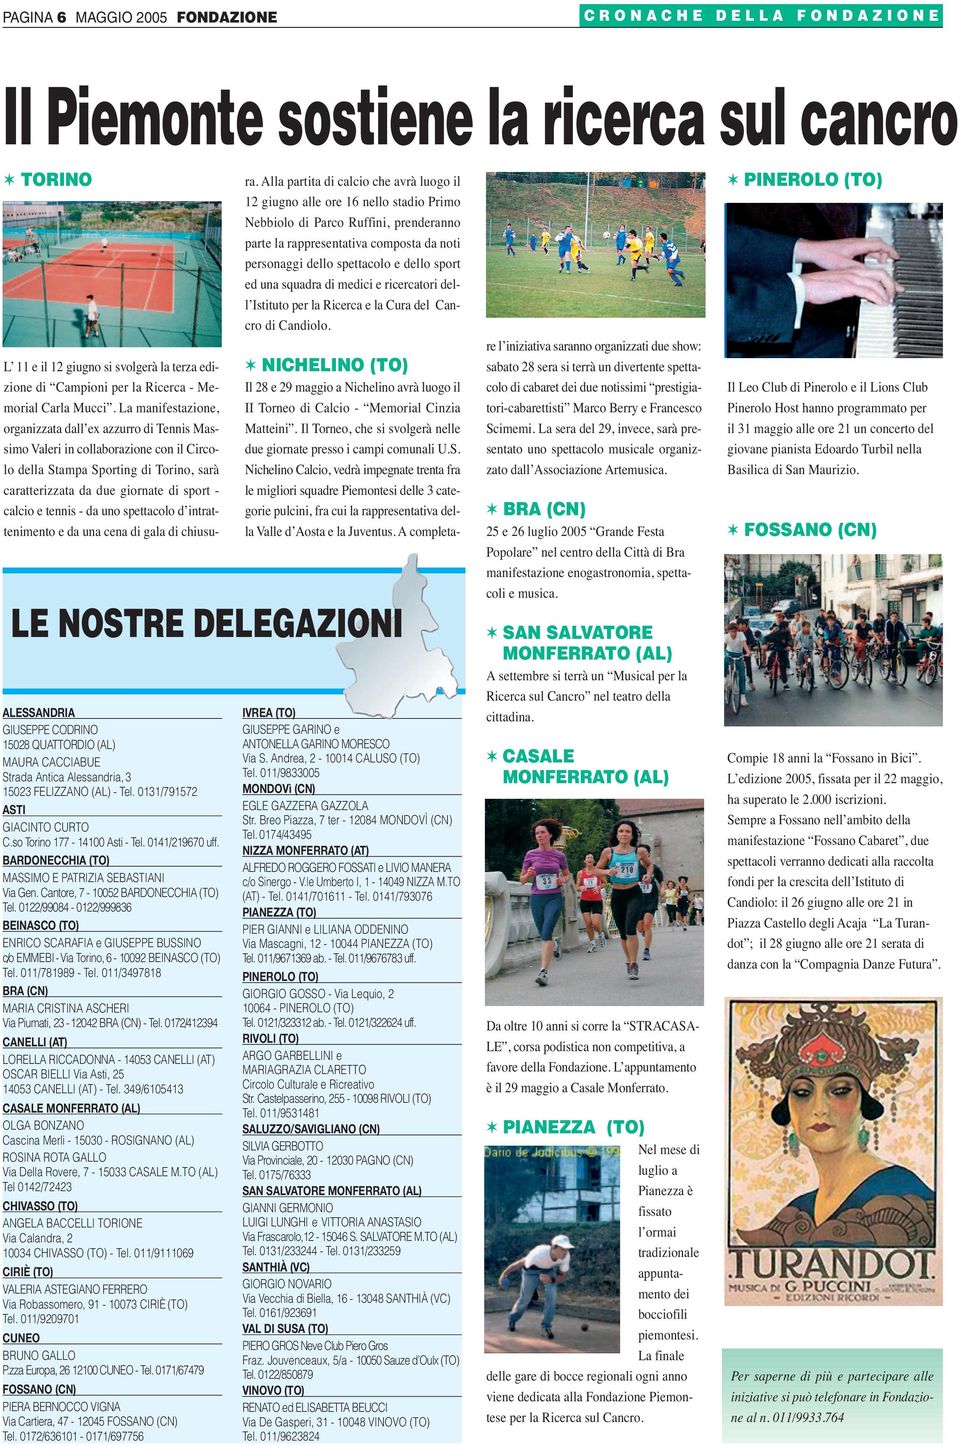 La manifestazione, organizzata dall ex azzurro di Tennis Massimo Valeri in collaborazione con il Circolo della Stampa Sporting di Torino, sarà caratterizzata da due giornate di sport - calcio e